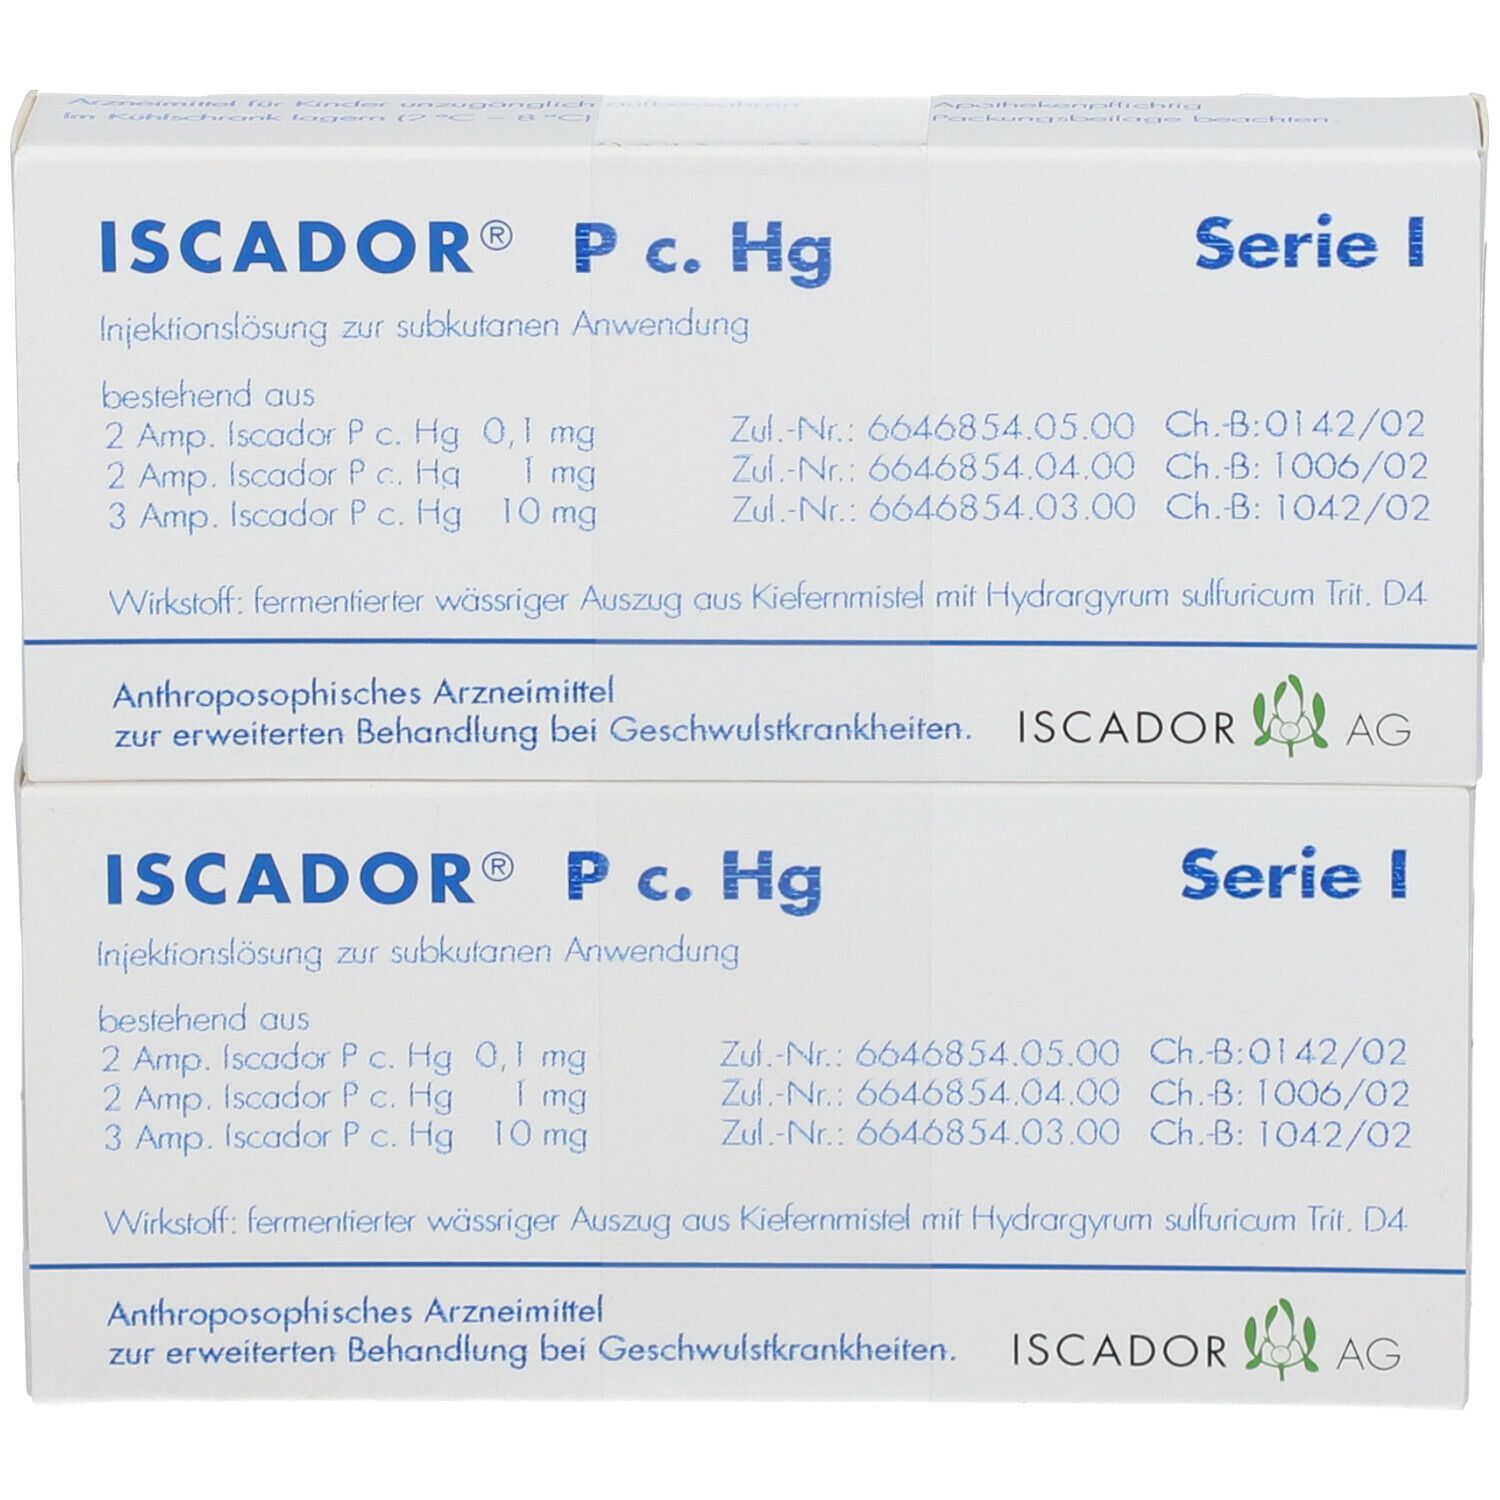 ISCADOR® P c. Hg Serie I